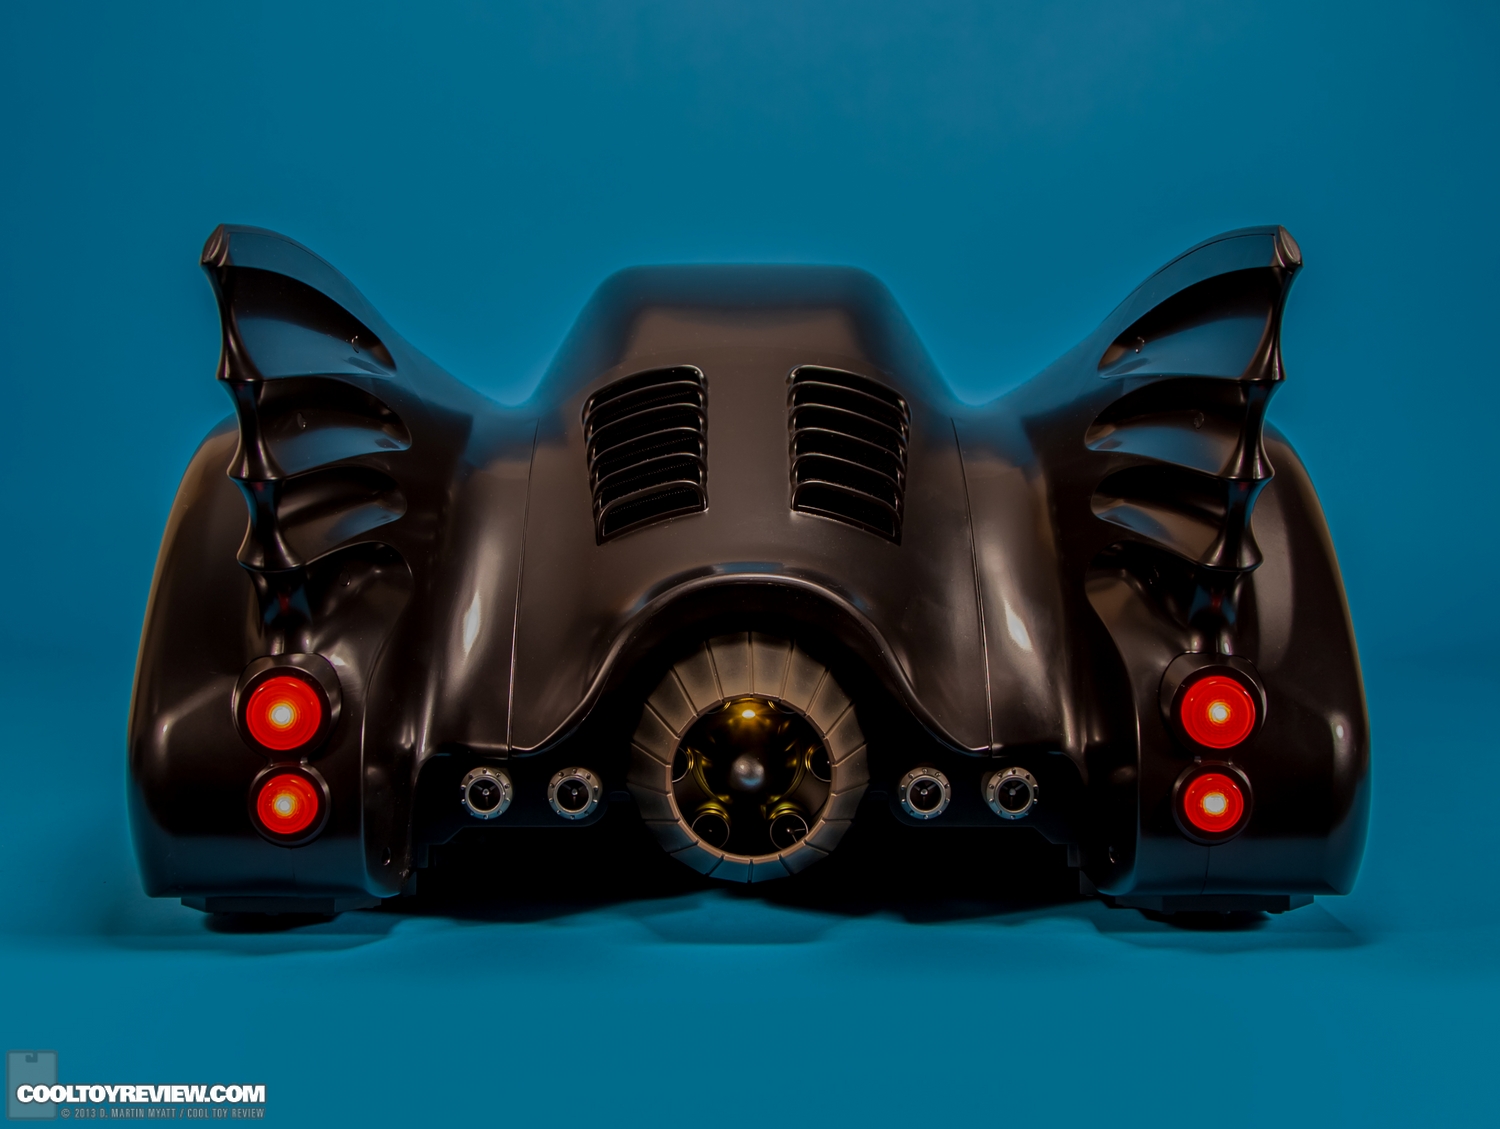 Batman-1989-Burton-Batmobile-Hot-Toys-007.jpg